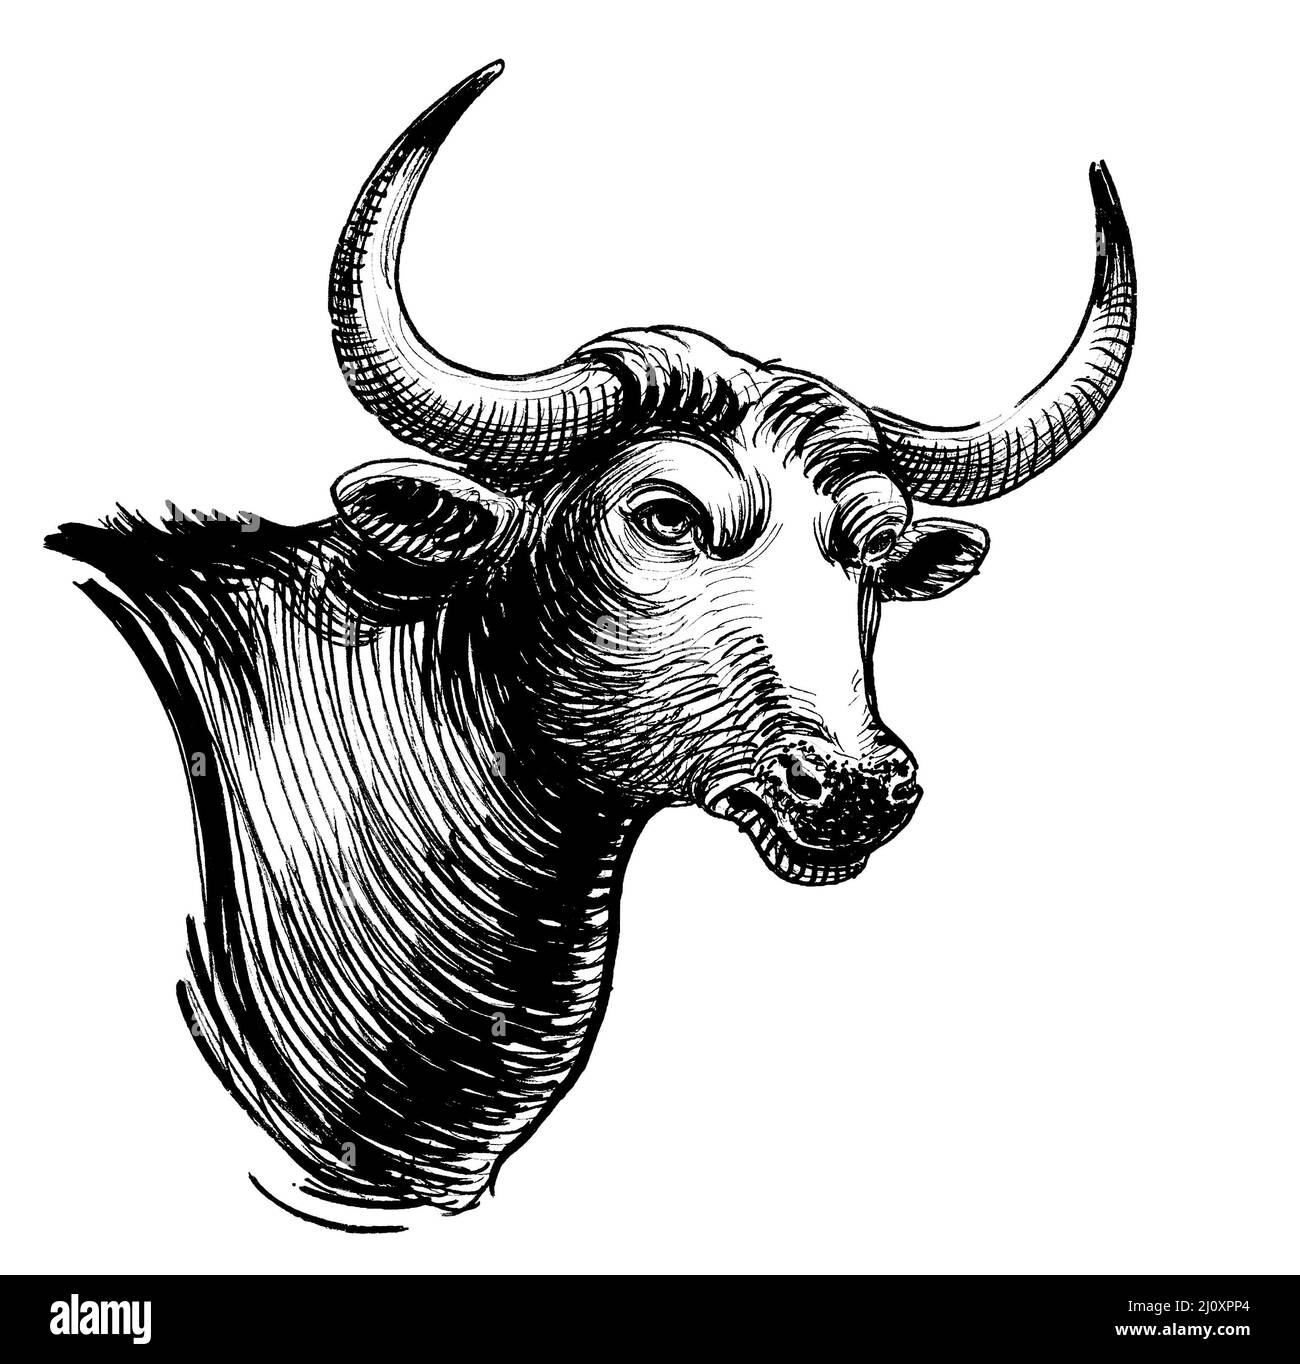 Tête de taureau avec longues cornes. Dessin noir et blanc Banque D'Images